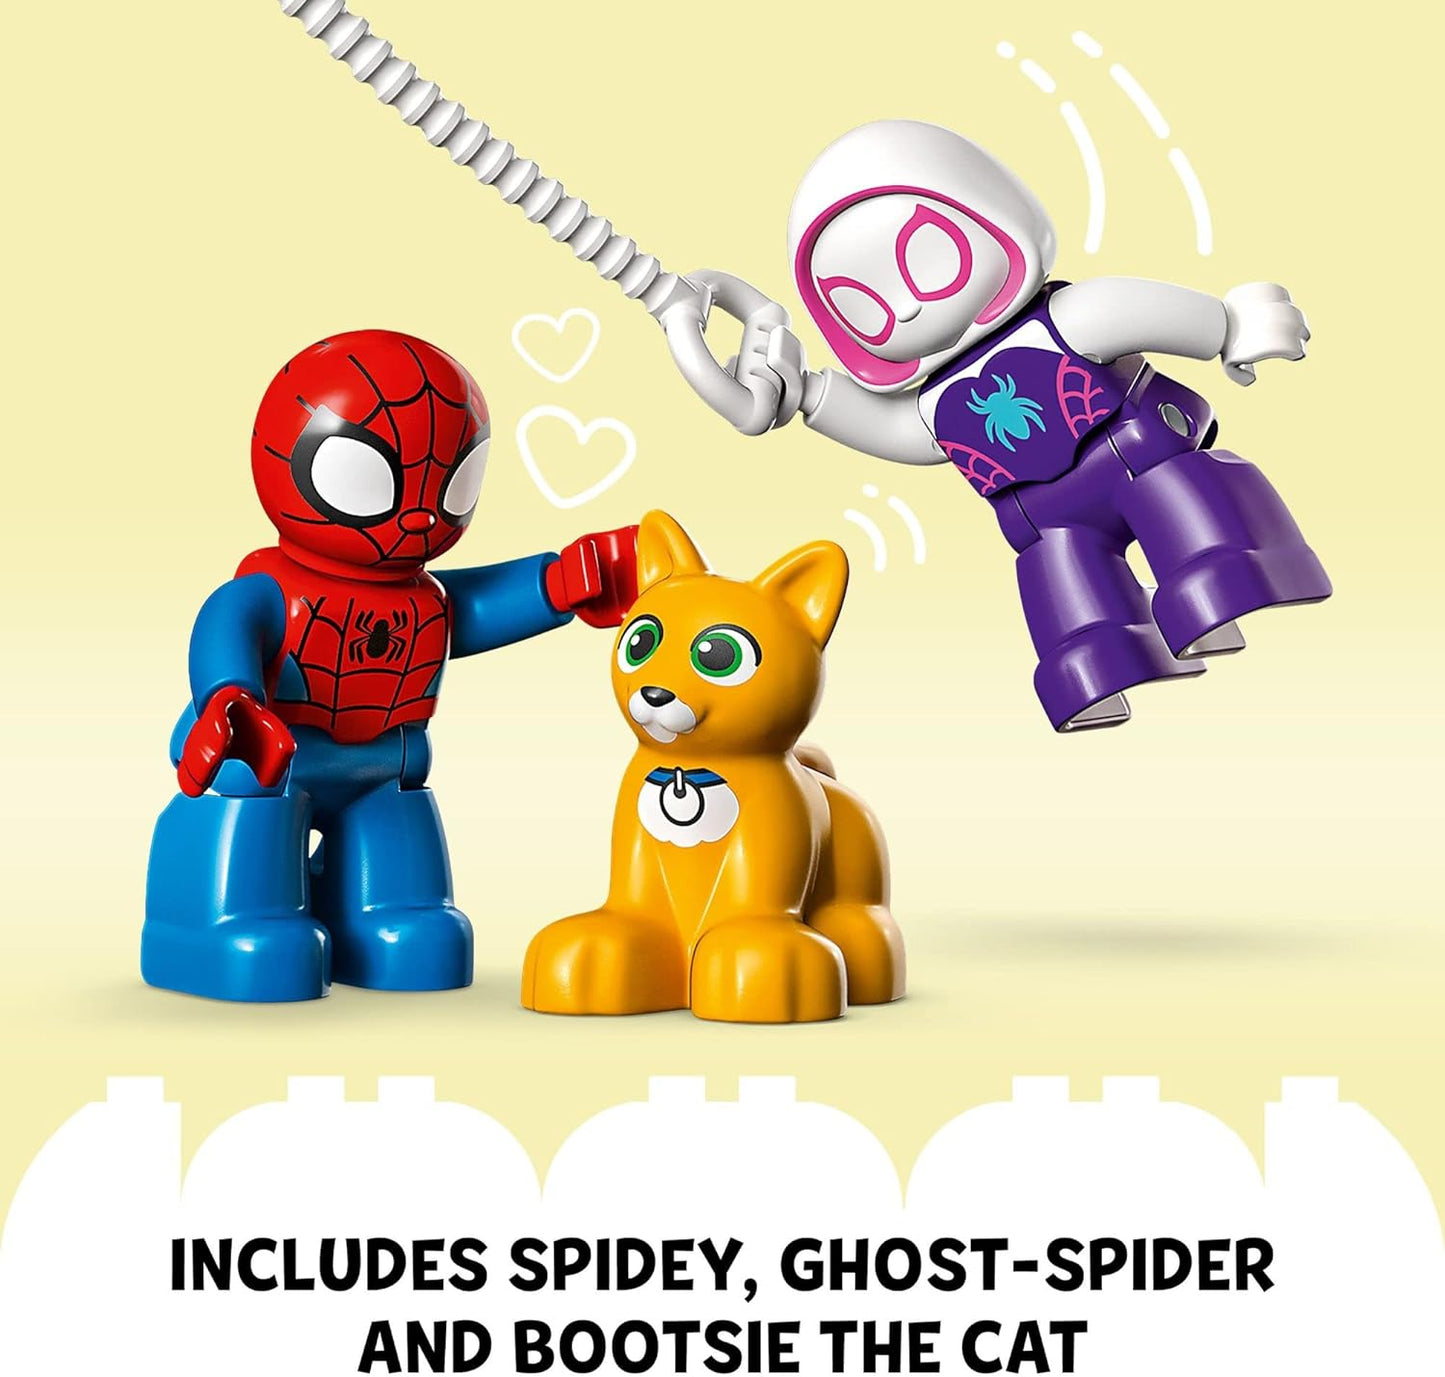 LEGO DUPLO - Spider-Man's House 10995